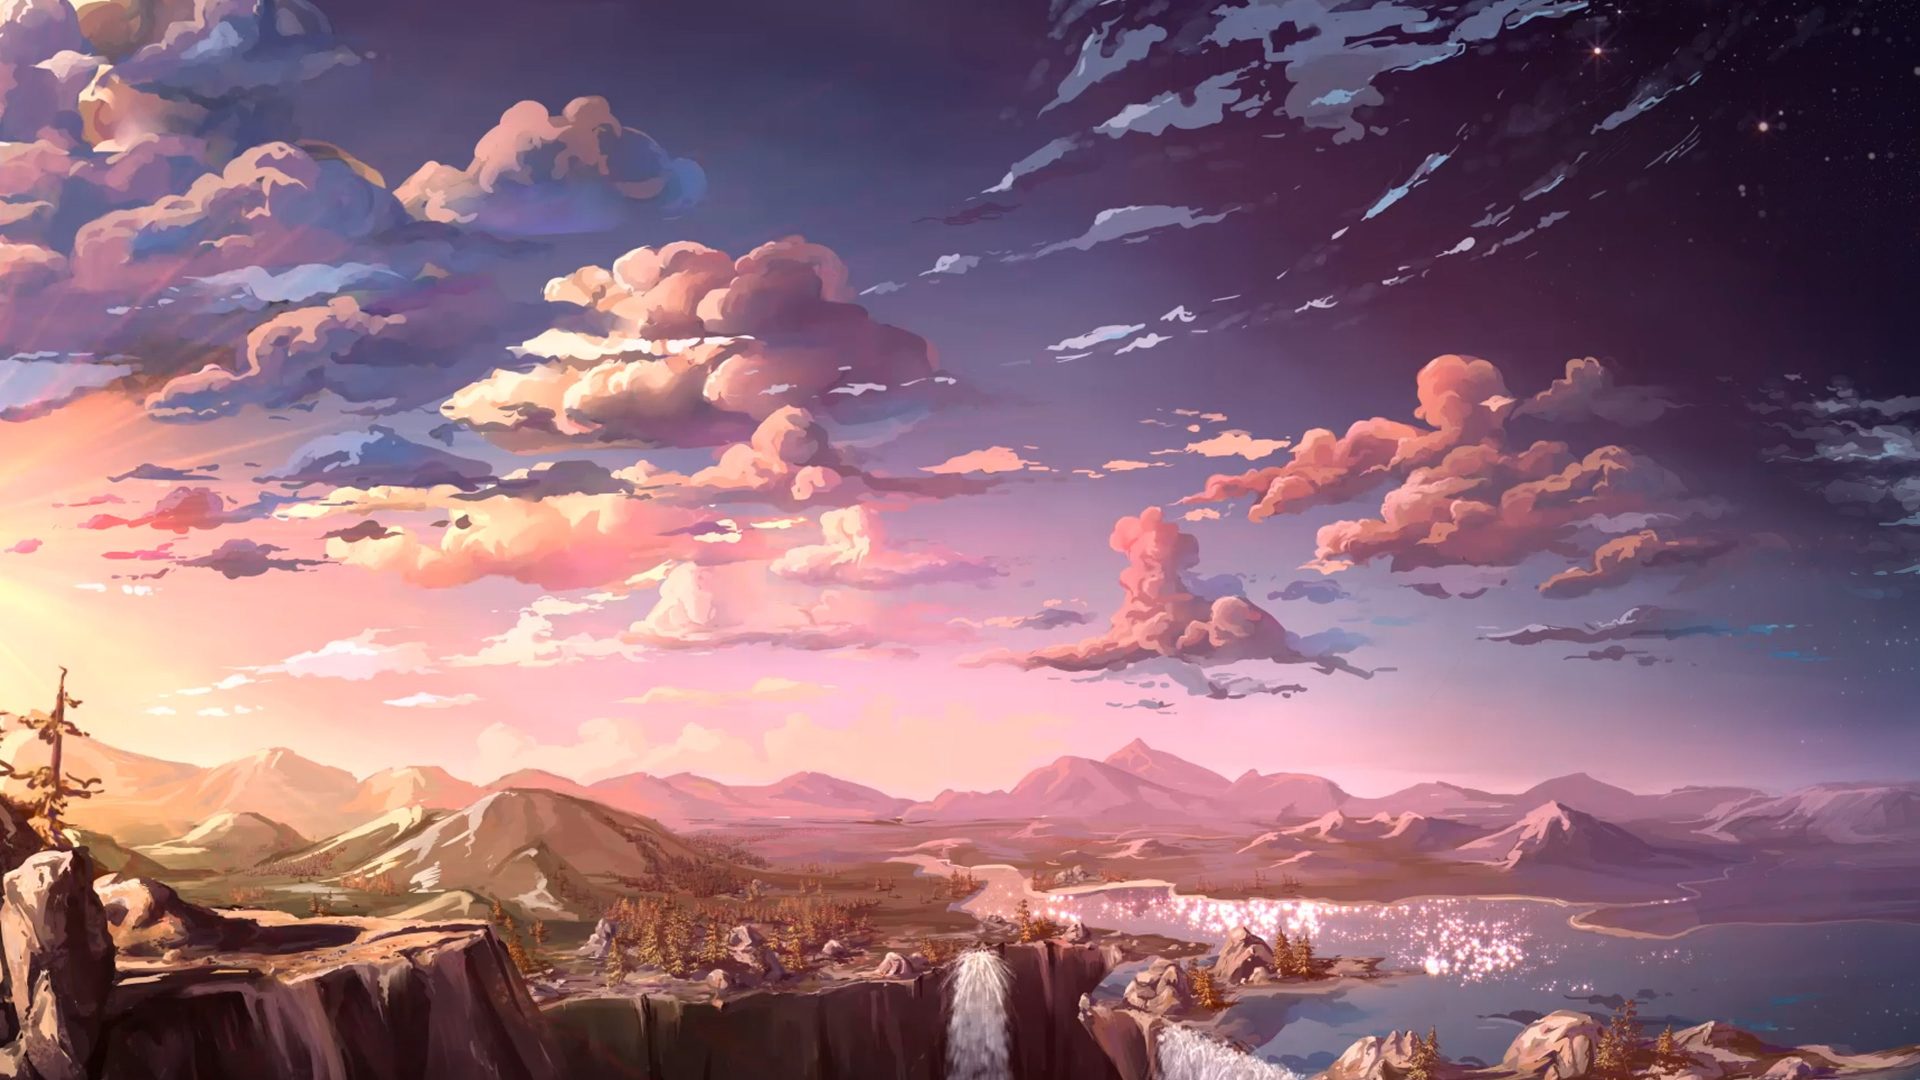 アニメの世界の壁紙,空,雲,山,山脈,自然の風景